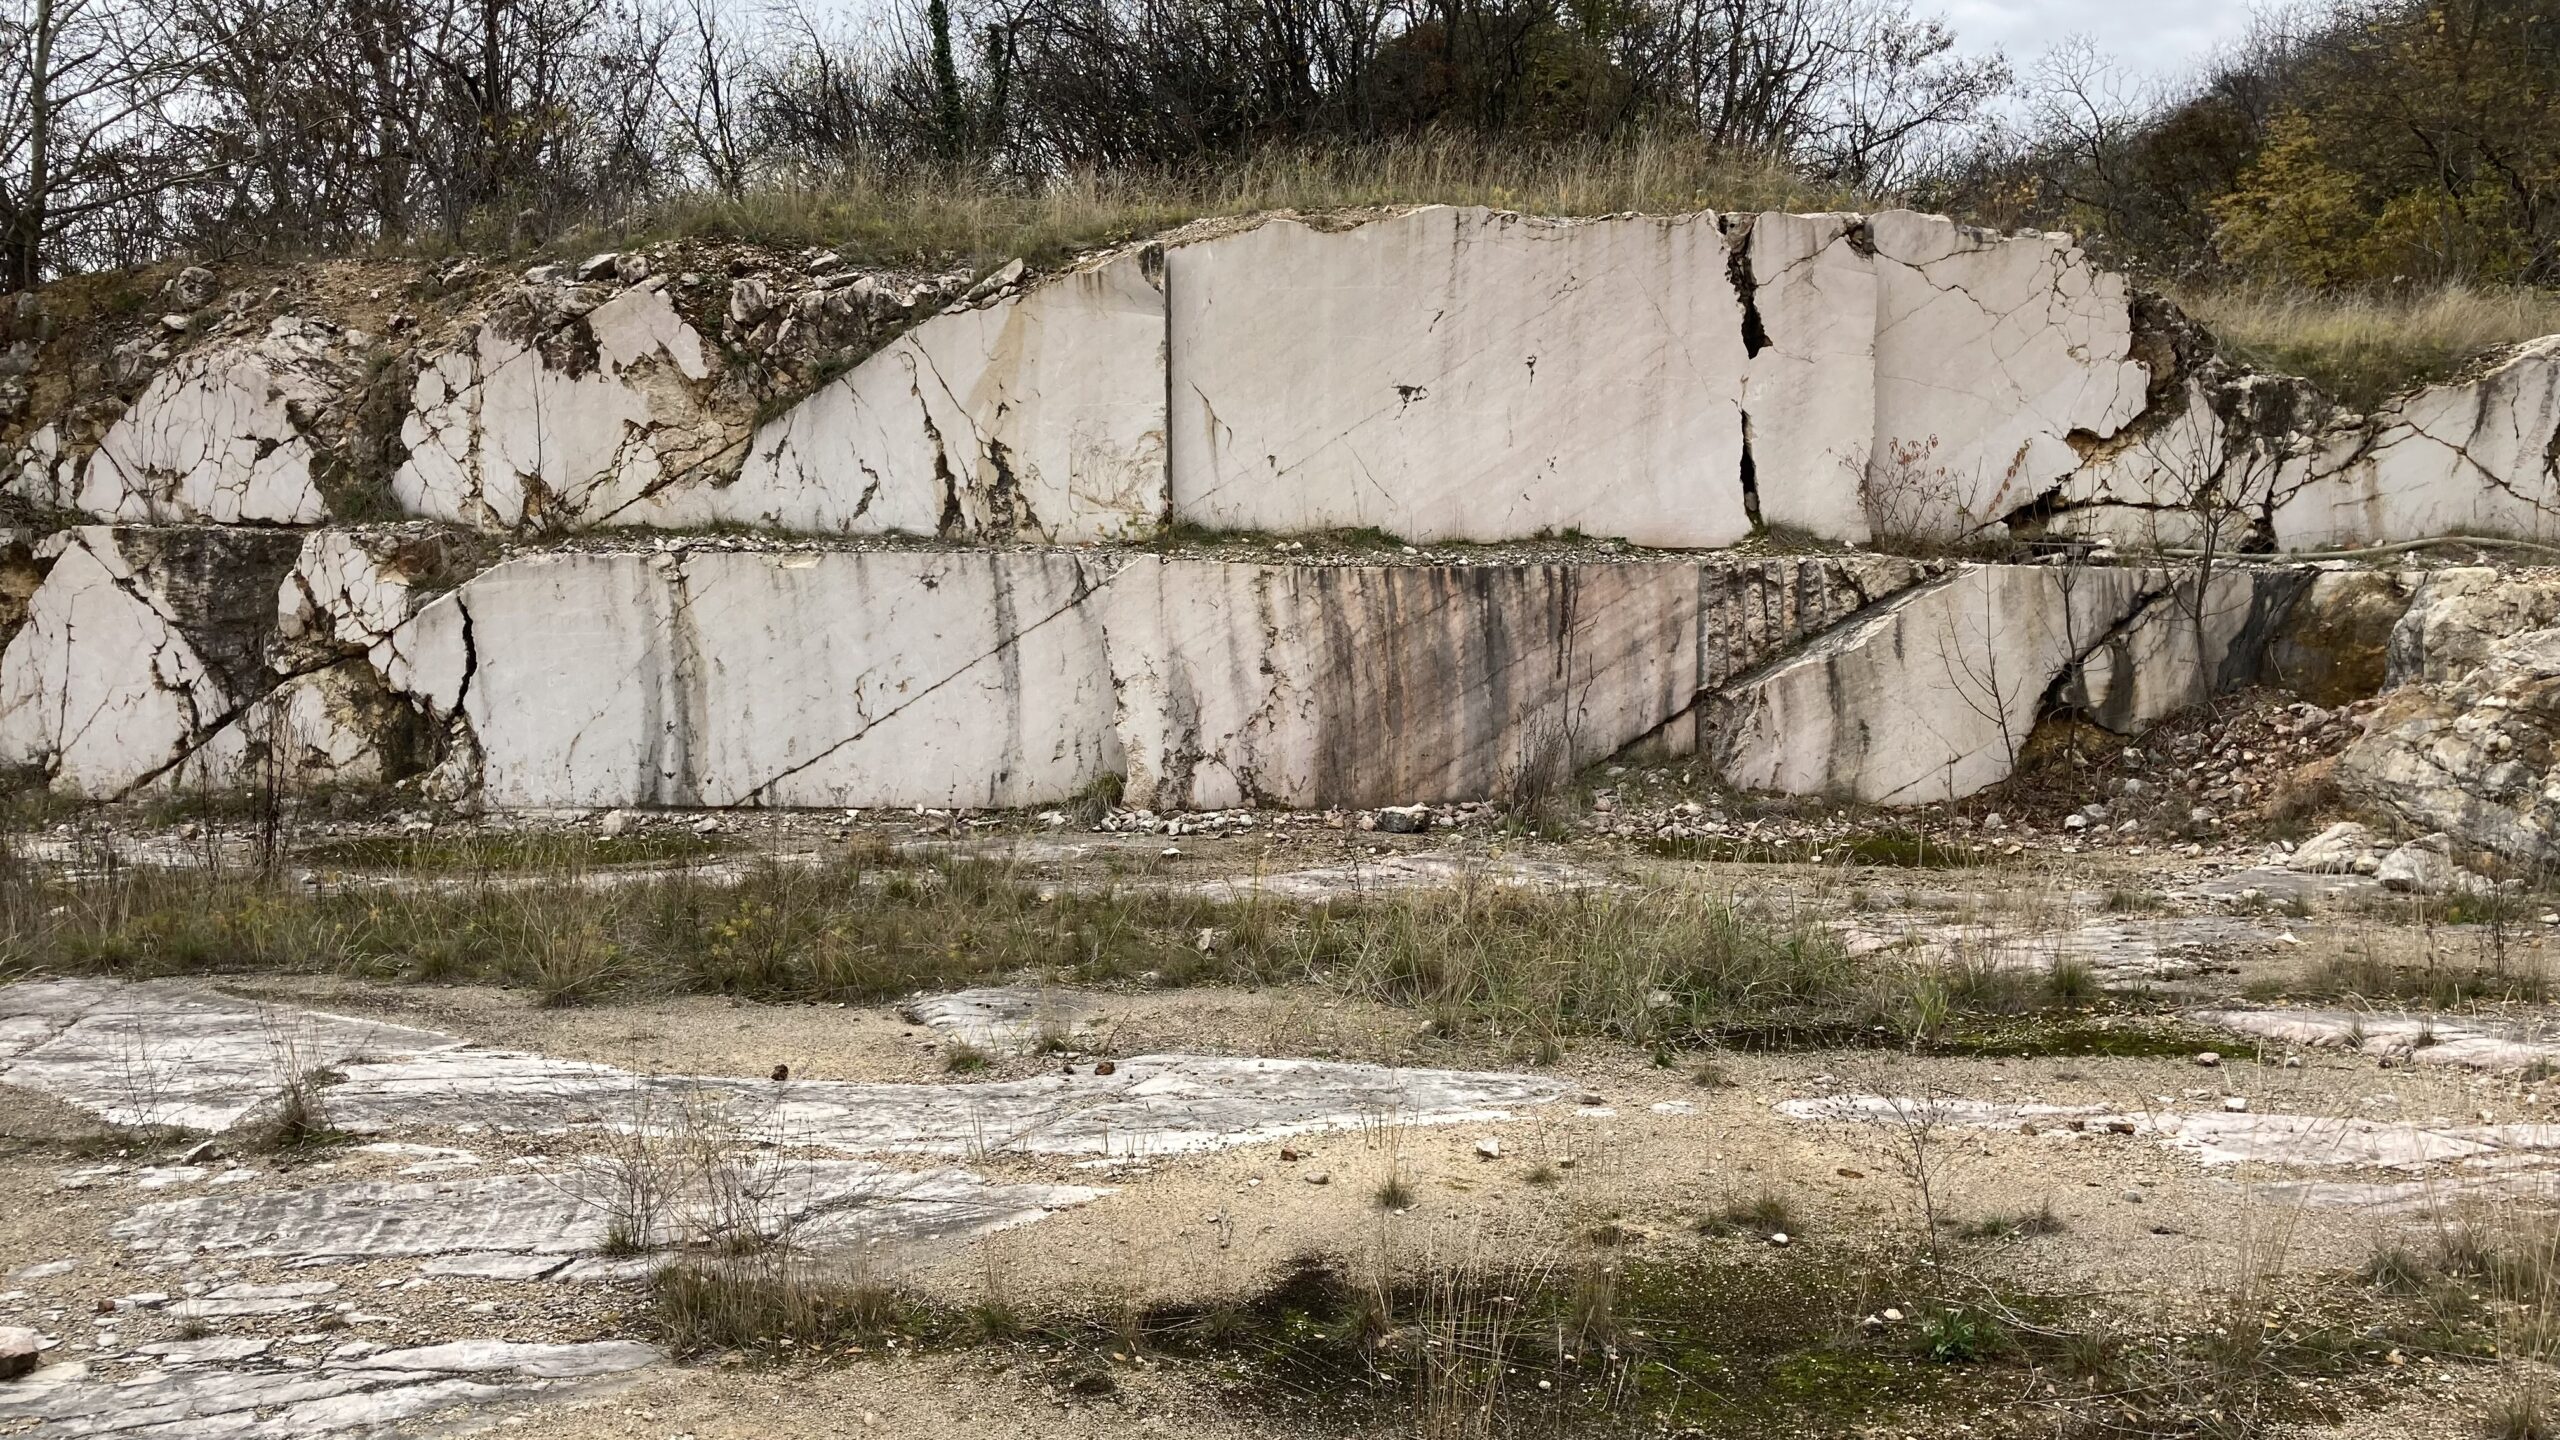 Eladó Siklóson márványbánya nagy területtel sok lehetőséggel